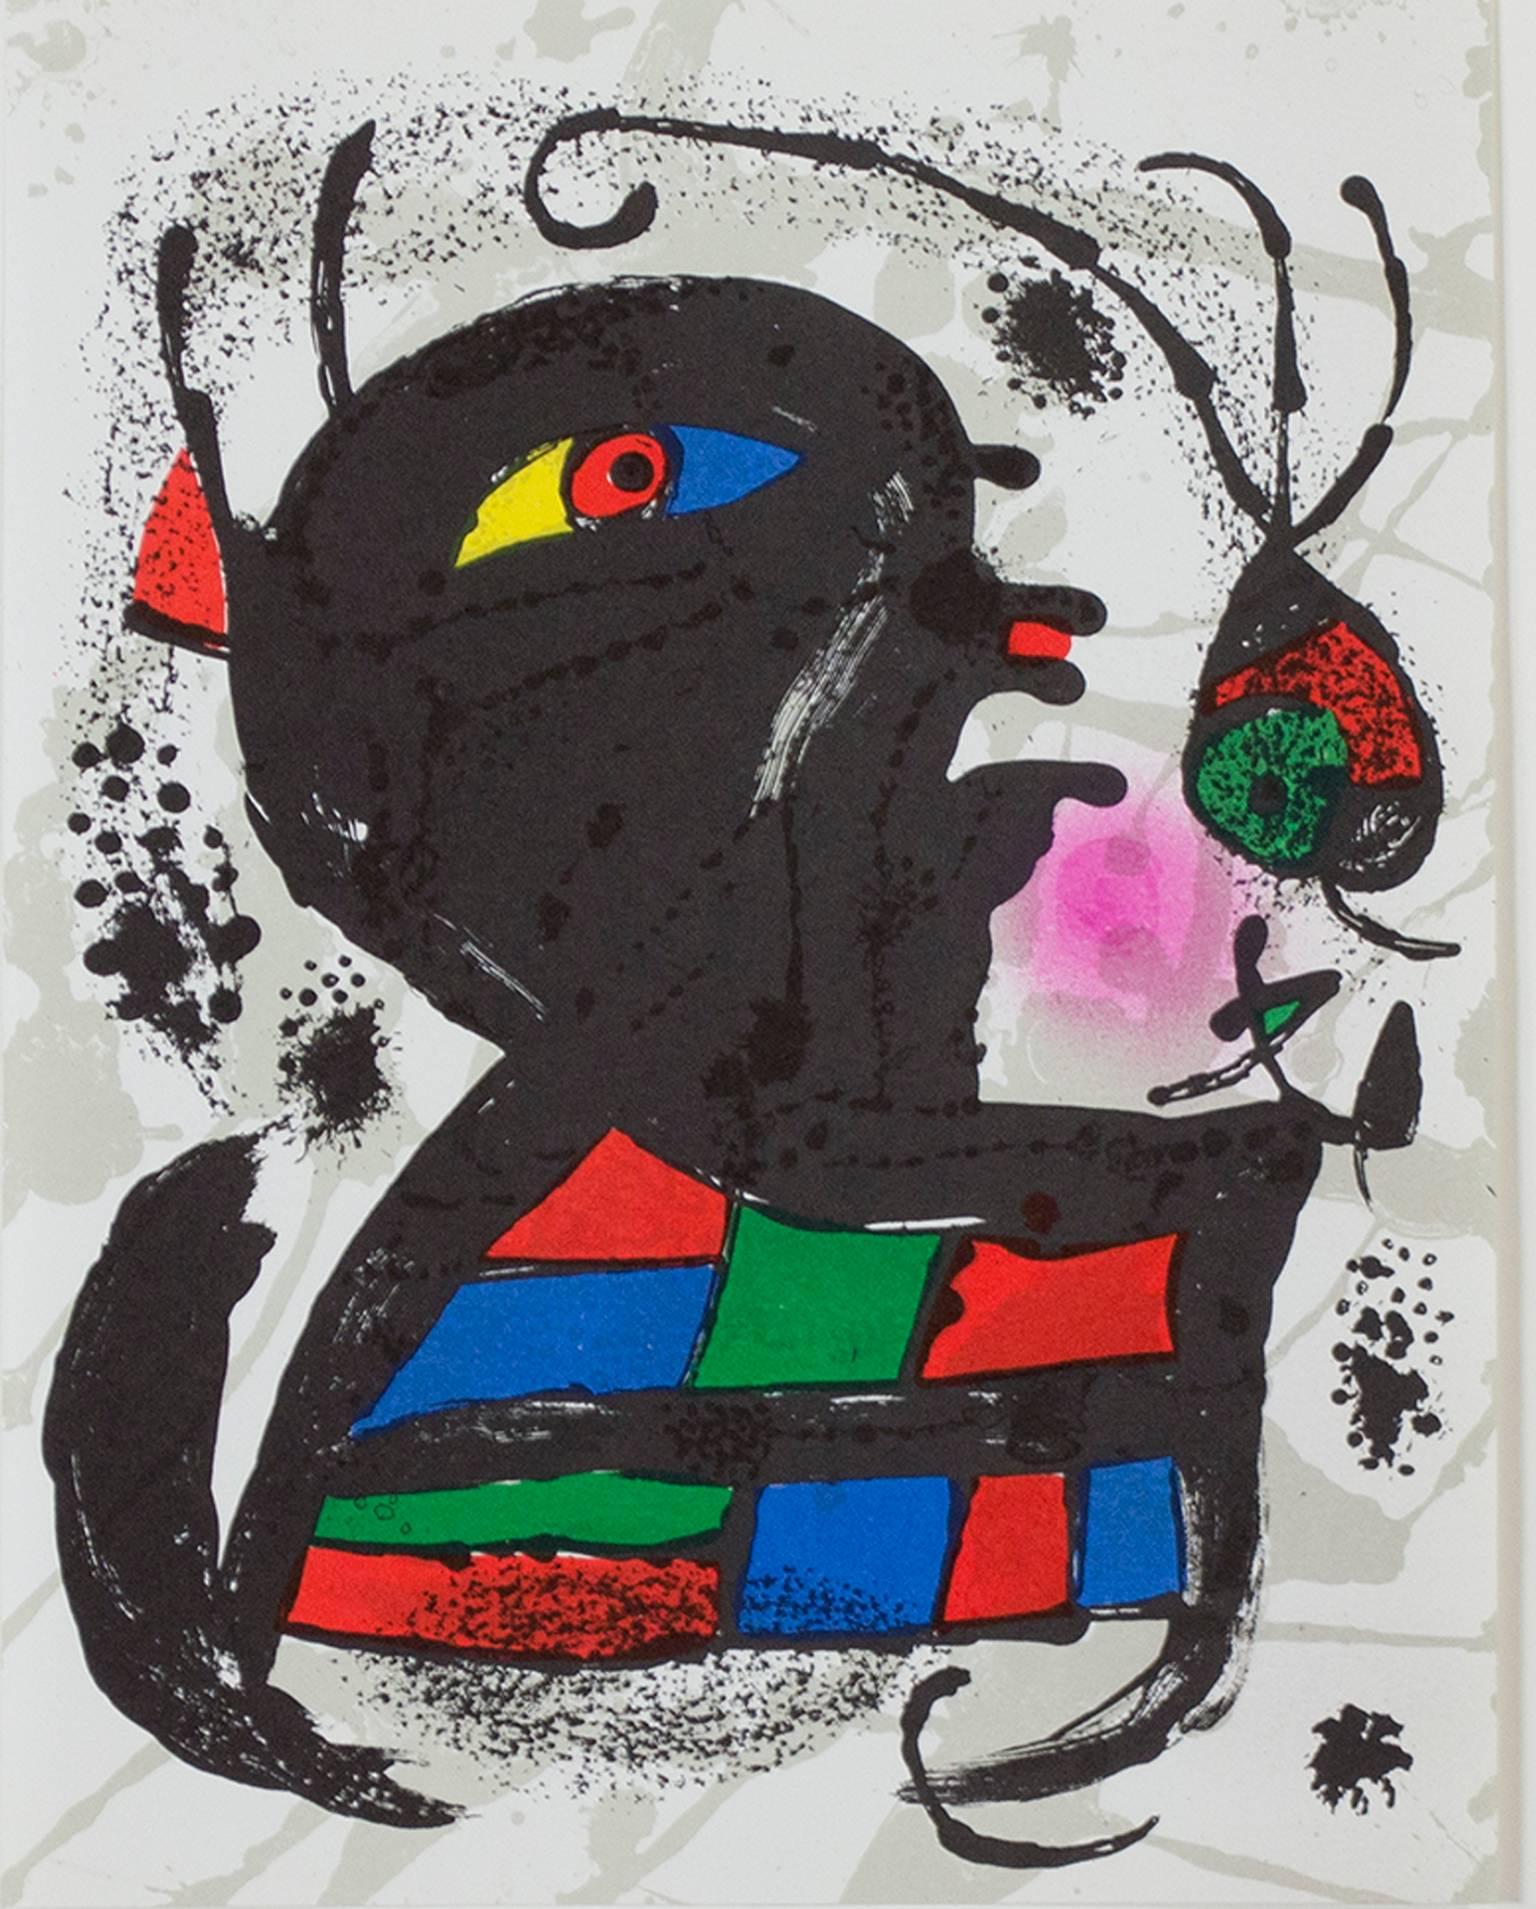 "Original Lithograph V" ist eine Original-Farblithographie von Joan Miro, die 1977 in "Miro Lithographs III, Maeght Publisher" veröffentlicht wurde. Es zeigt Miros charakteristischen biomorphen abstrakten Stil in Schwarz, Grün, Gelb, Rot und Blau.